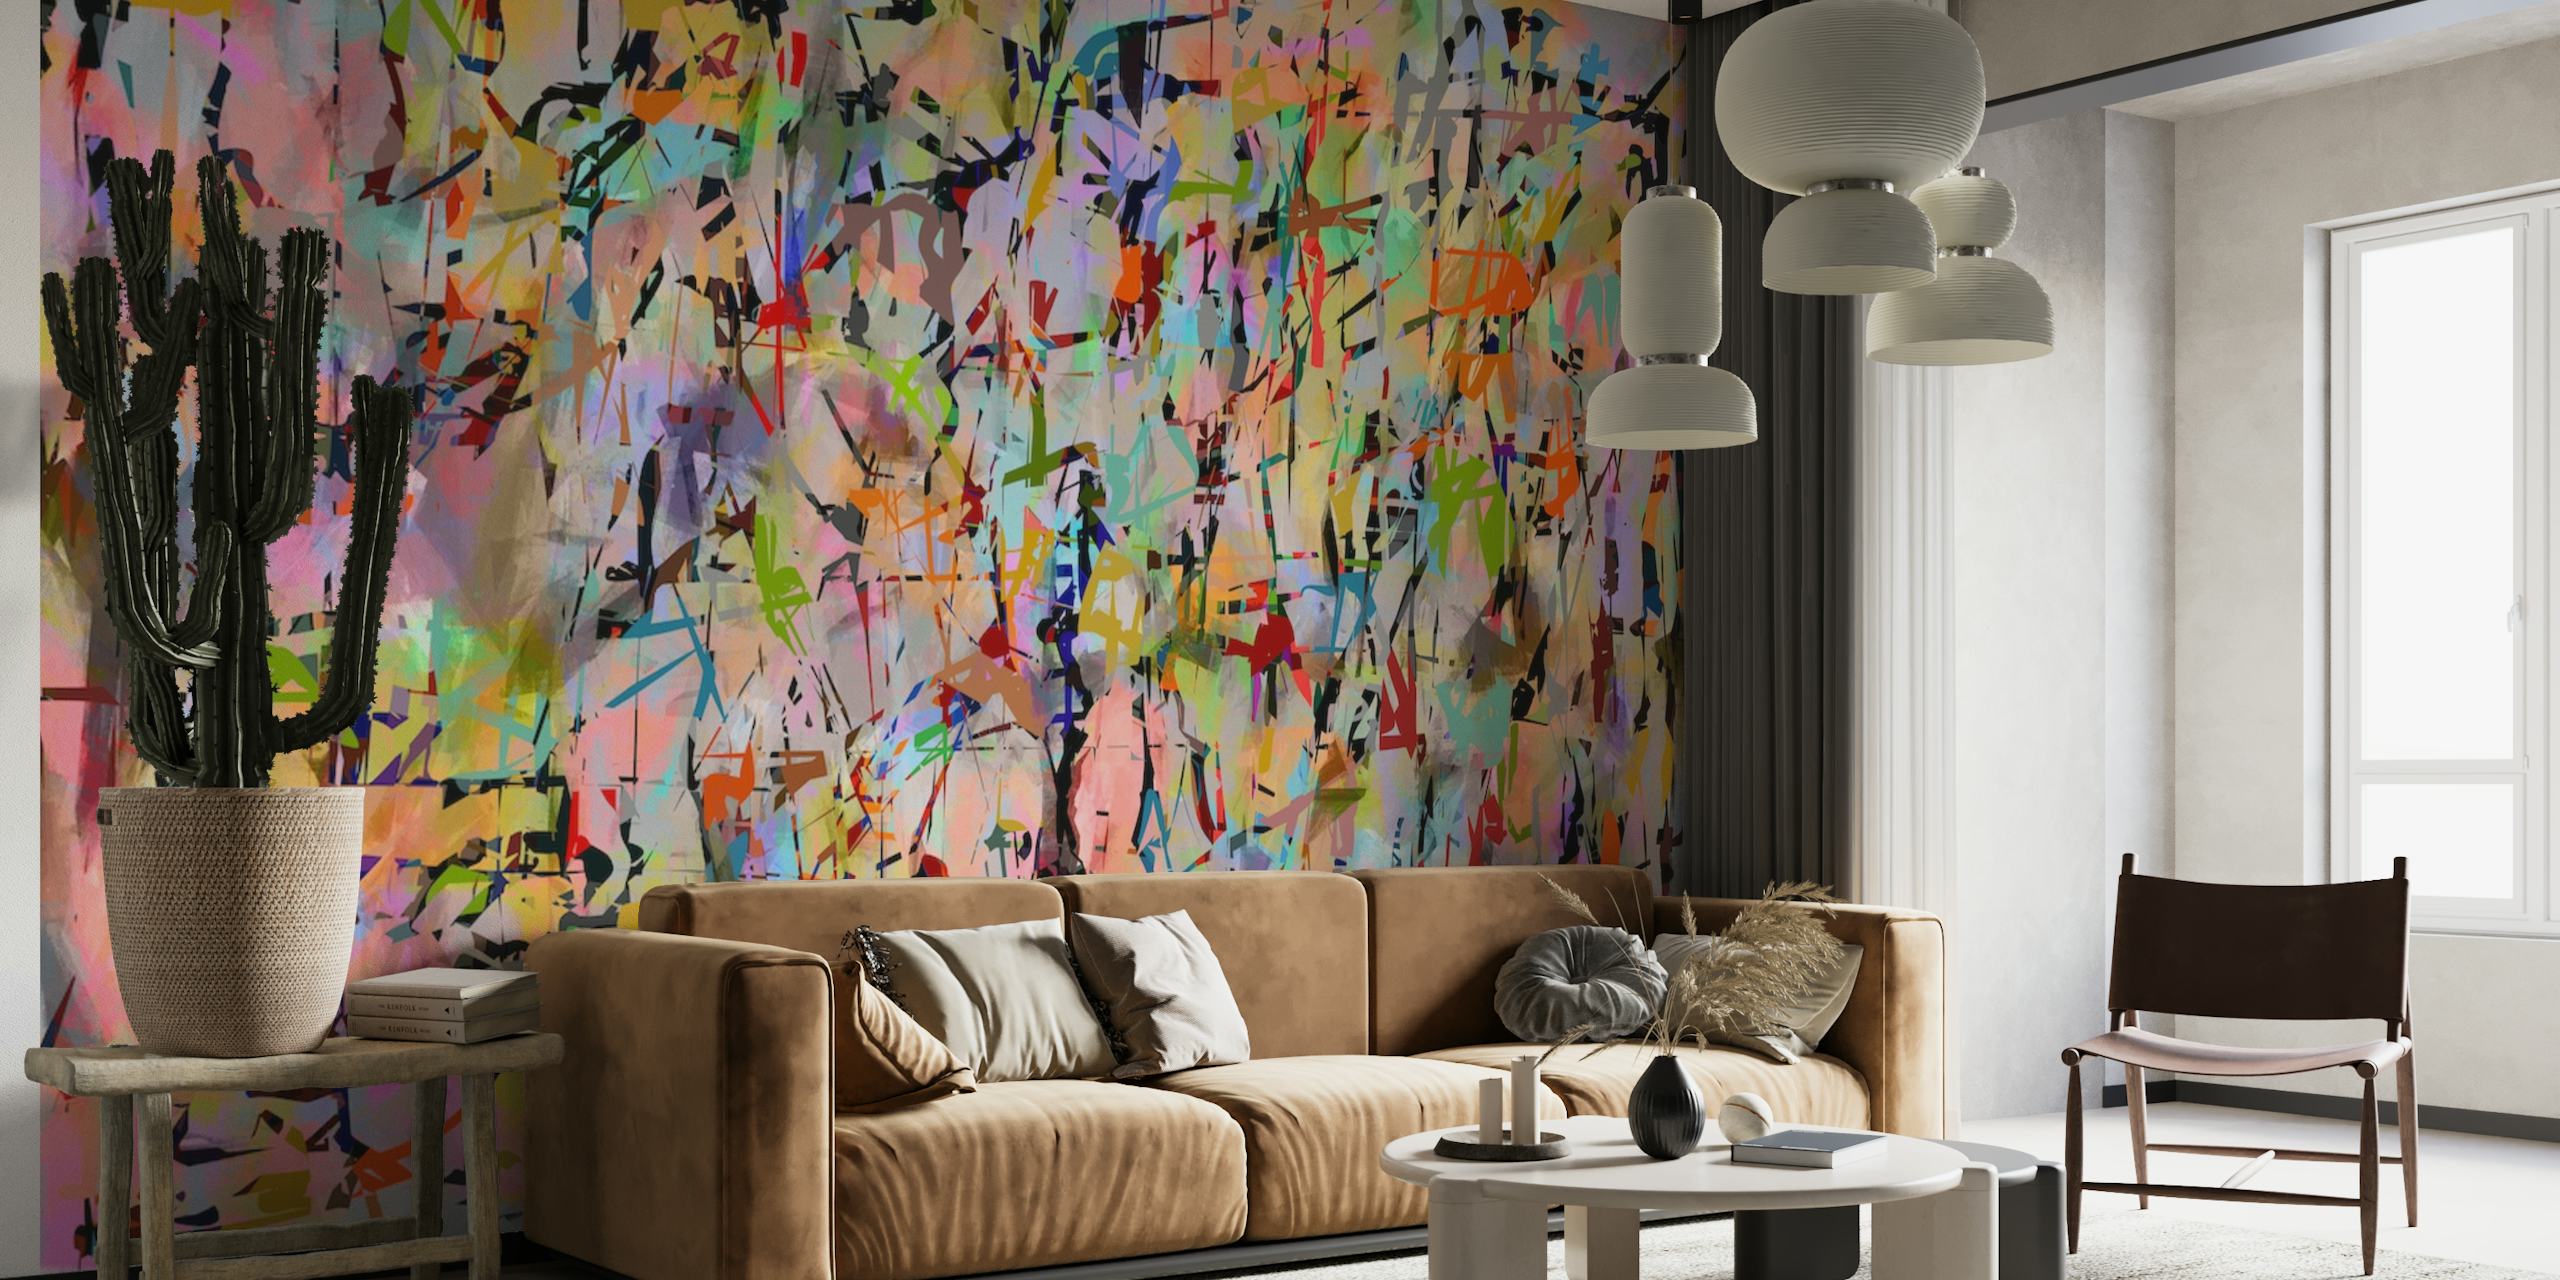 Abstrakt ekspresjonistisk-inspirert Pollock - Gateway 4In veggmaleri med levende fargeklatt